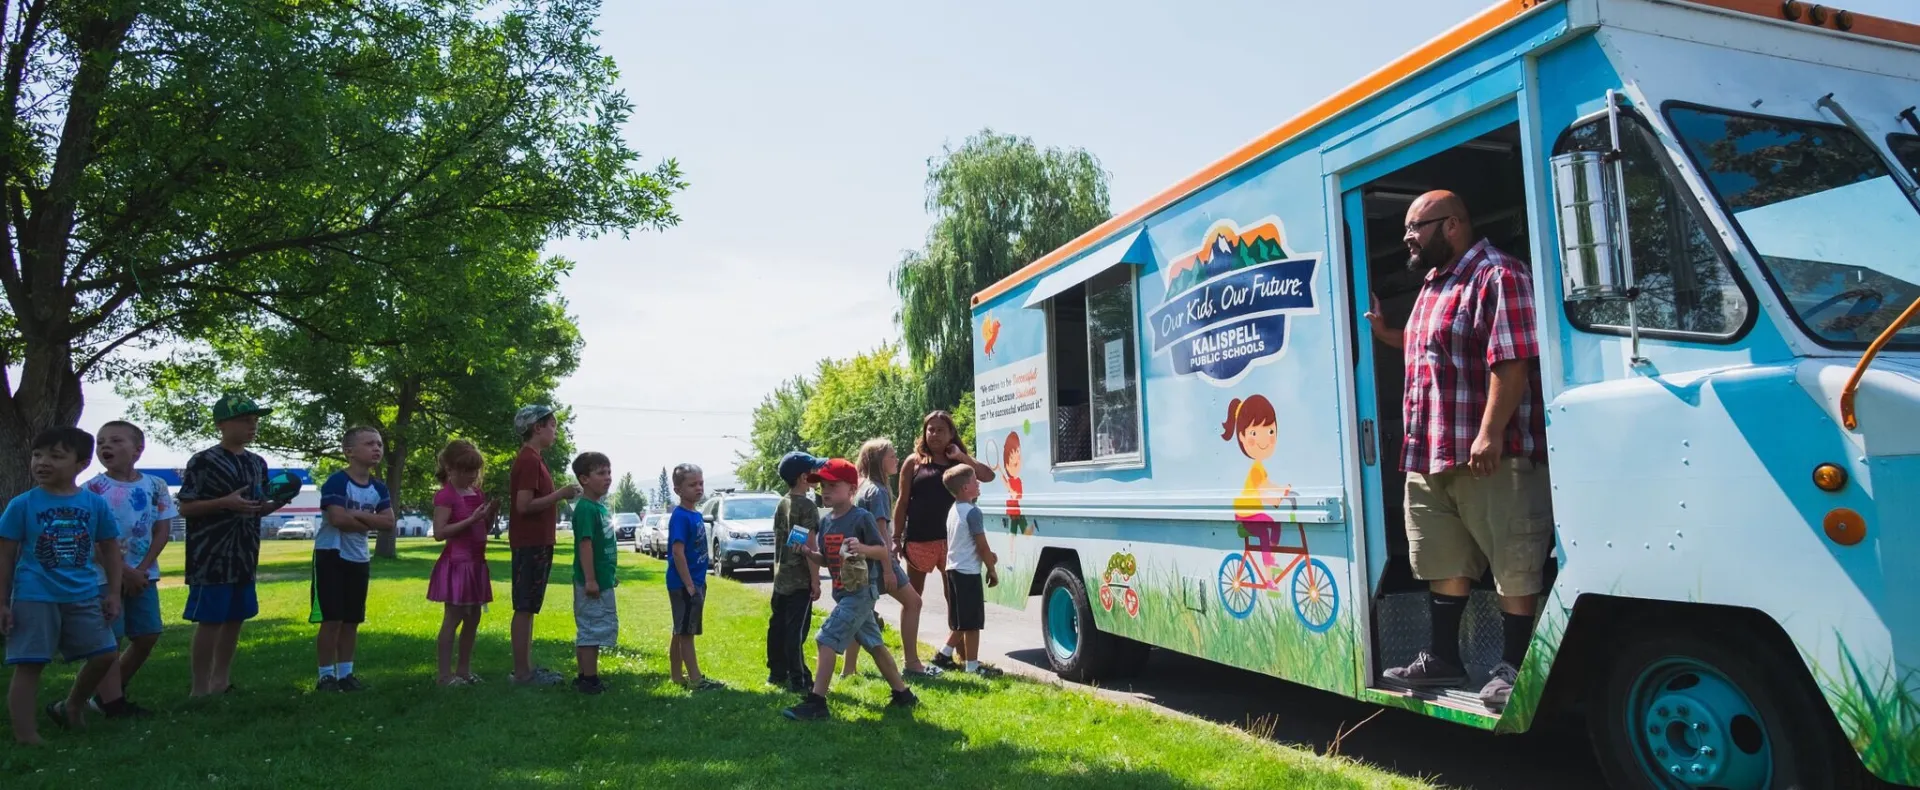 A summer meals truck in Kalispell, Montana